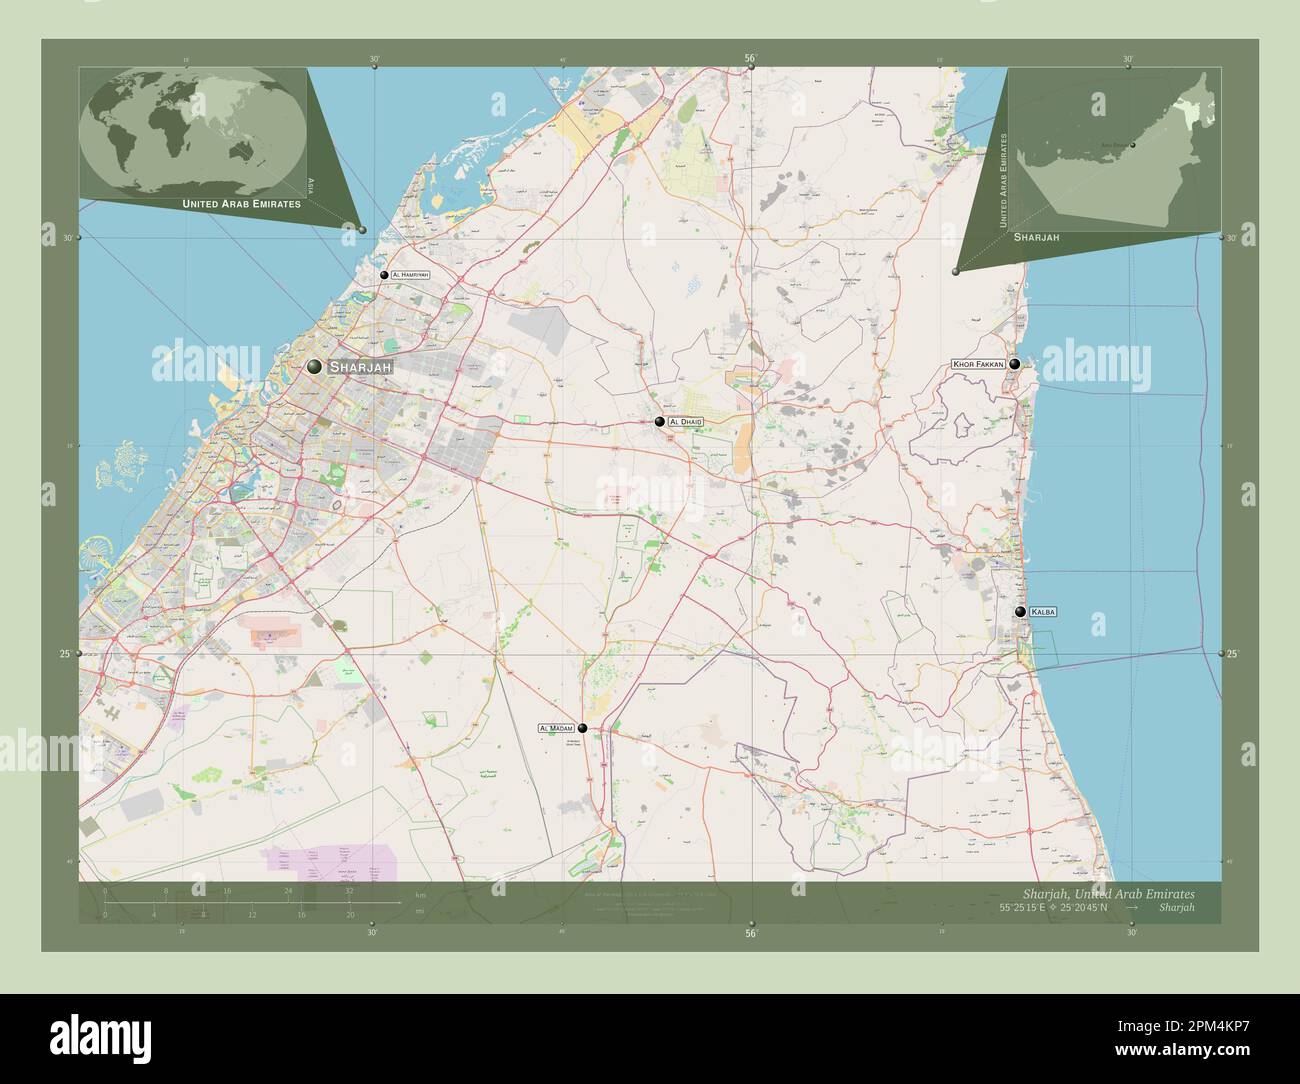 Sharjah, Emirat der Vereinigten Arabischen Emirate. Straßenkarte Öffnen. Standorte und Namen der wichtigsten Städte der Region. Eckkarten für zusätzliche Standorte Stockfoto